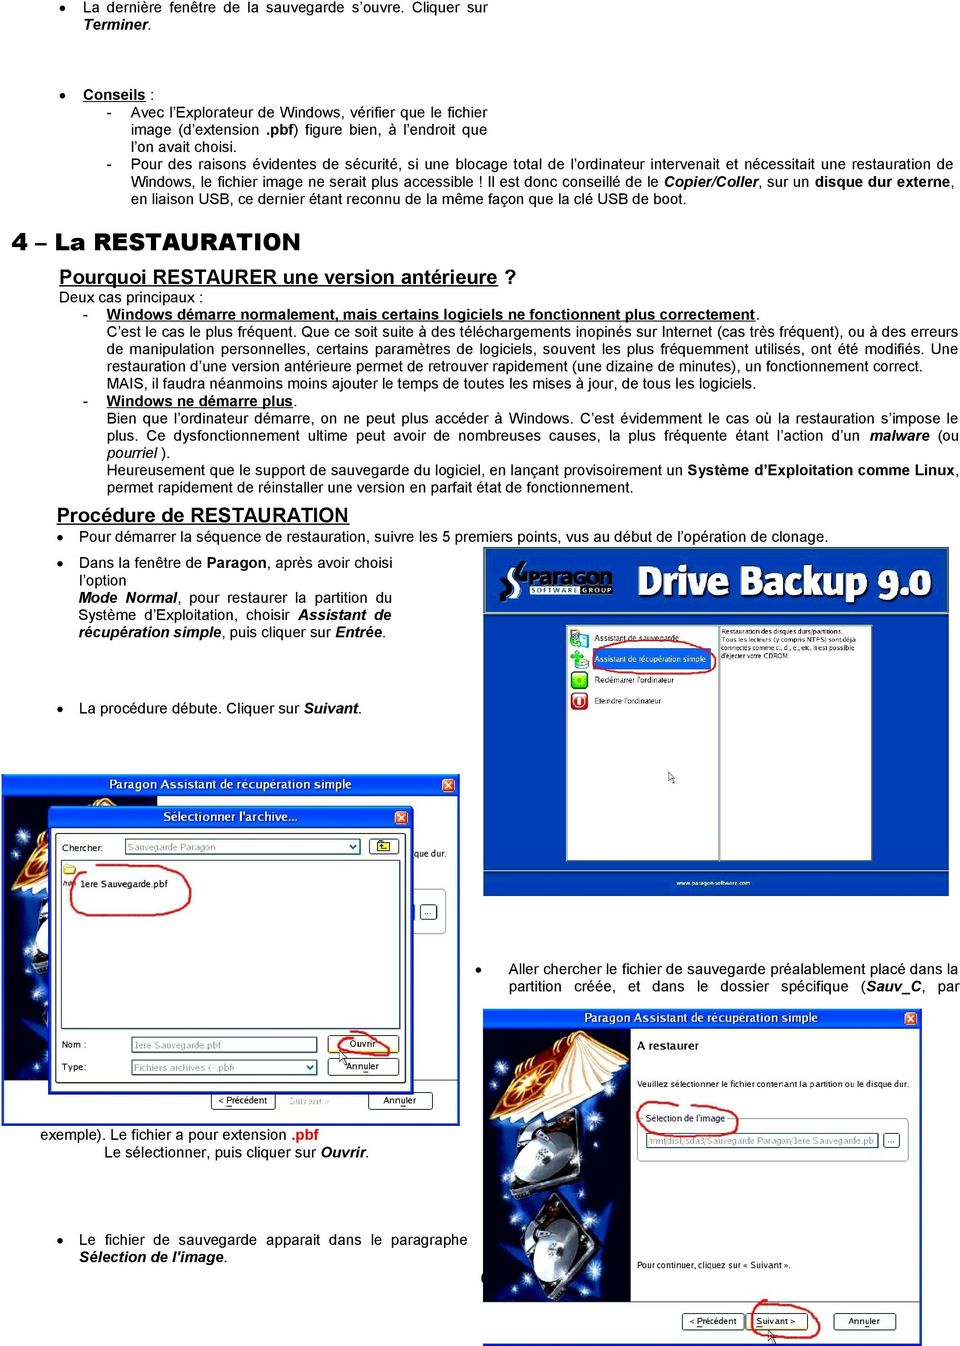 - Pour des raisons évidentes de sécurité, si une blocage total de l ordinateur intervenait et nécessitait une restauration de Windows, le fichier image ne serait plus accessible!